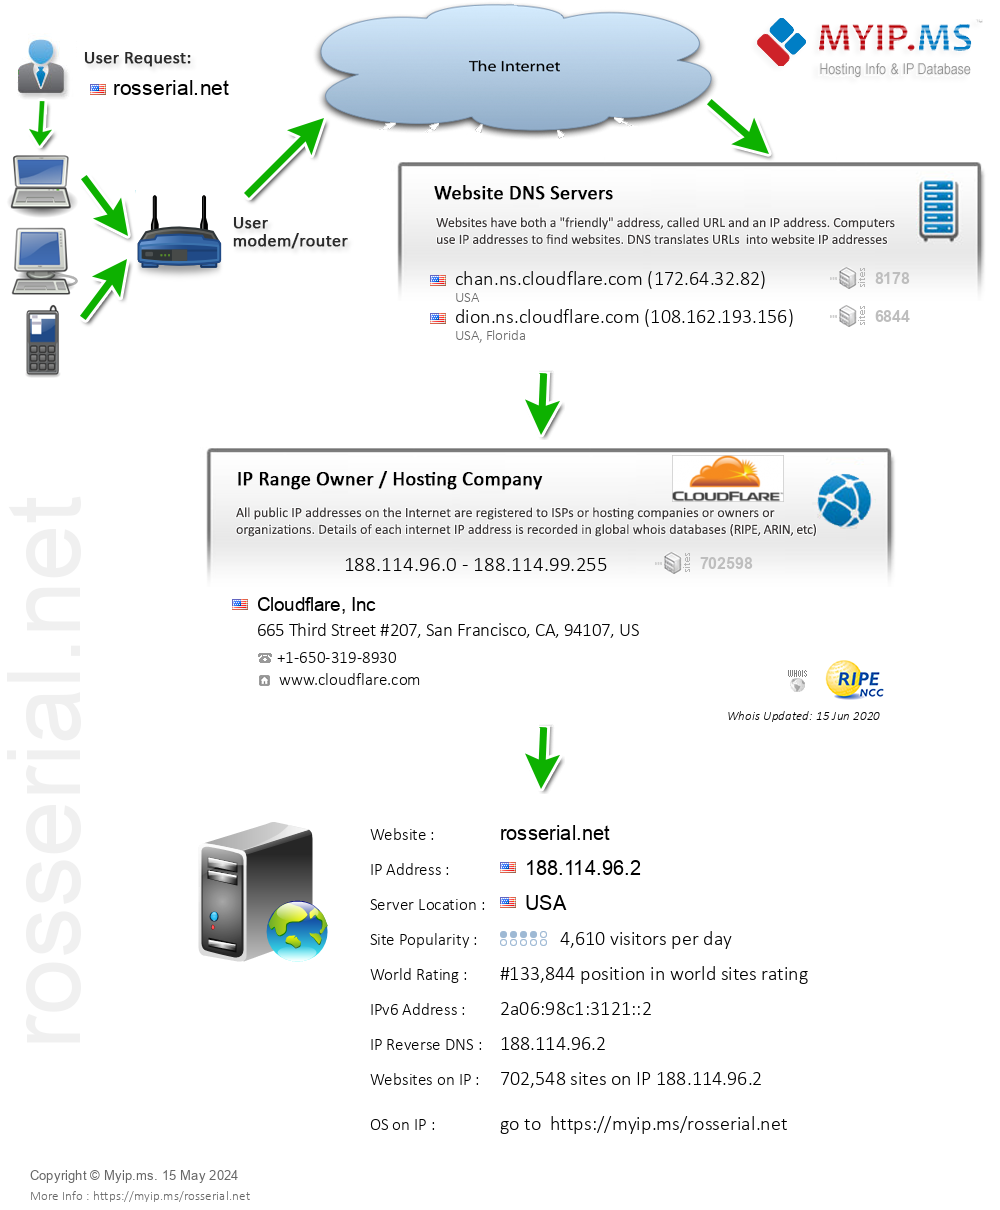 Rosserial.net - Website Hosting Visual IP Diagram